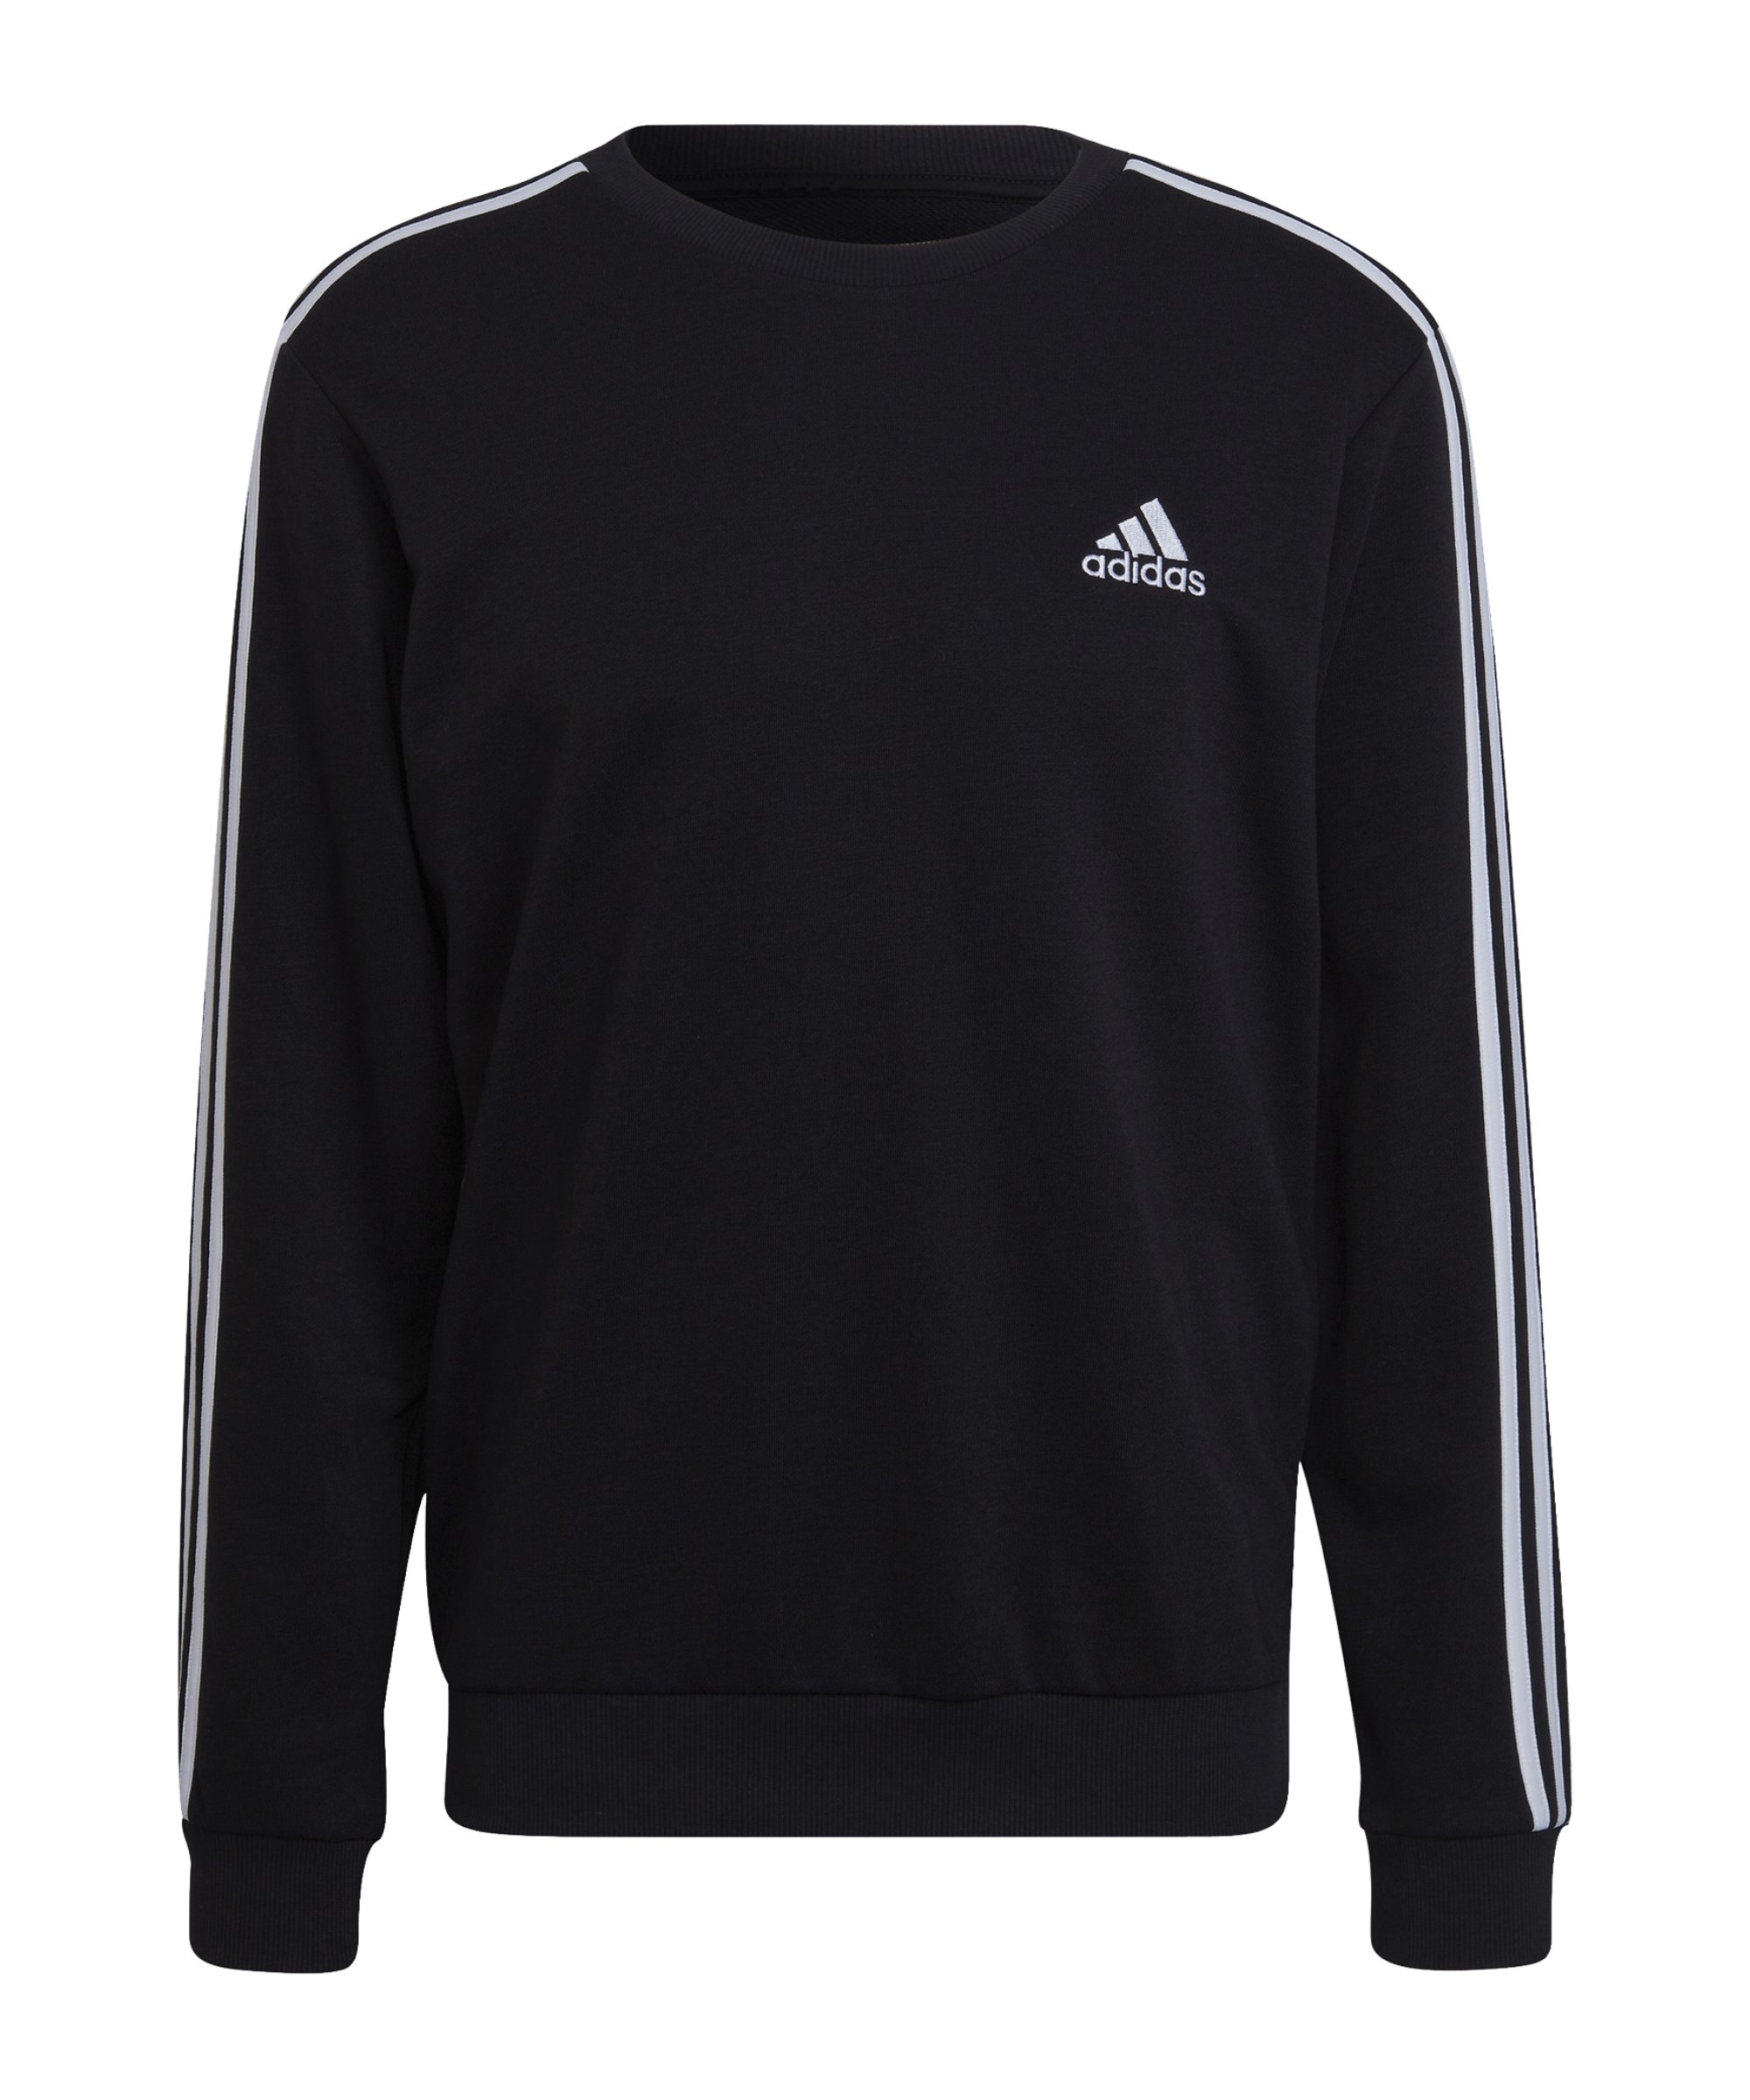 adidas Essentials 3S Sweatshirt Schwarz Weiss - schwarz